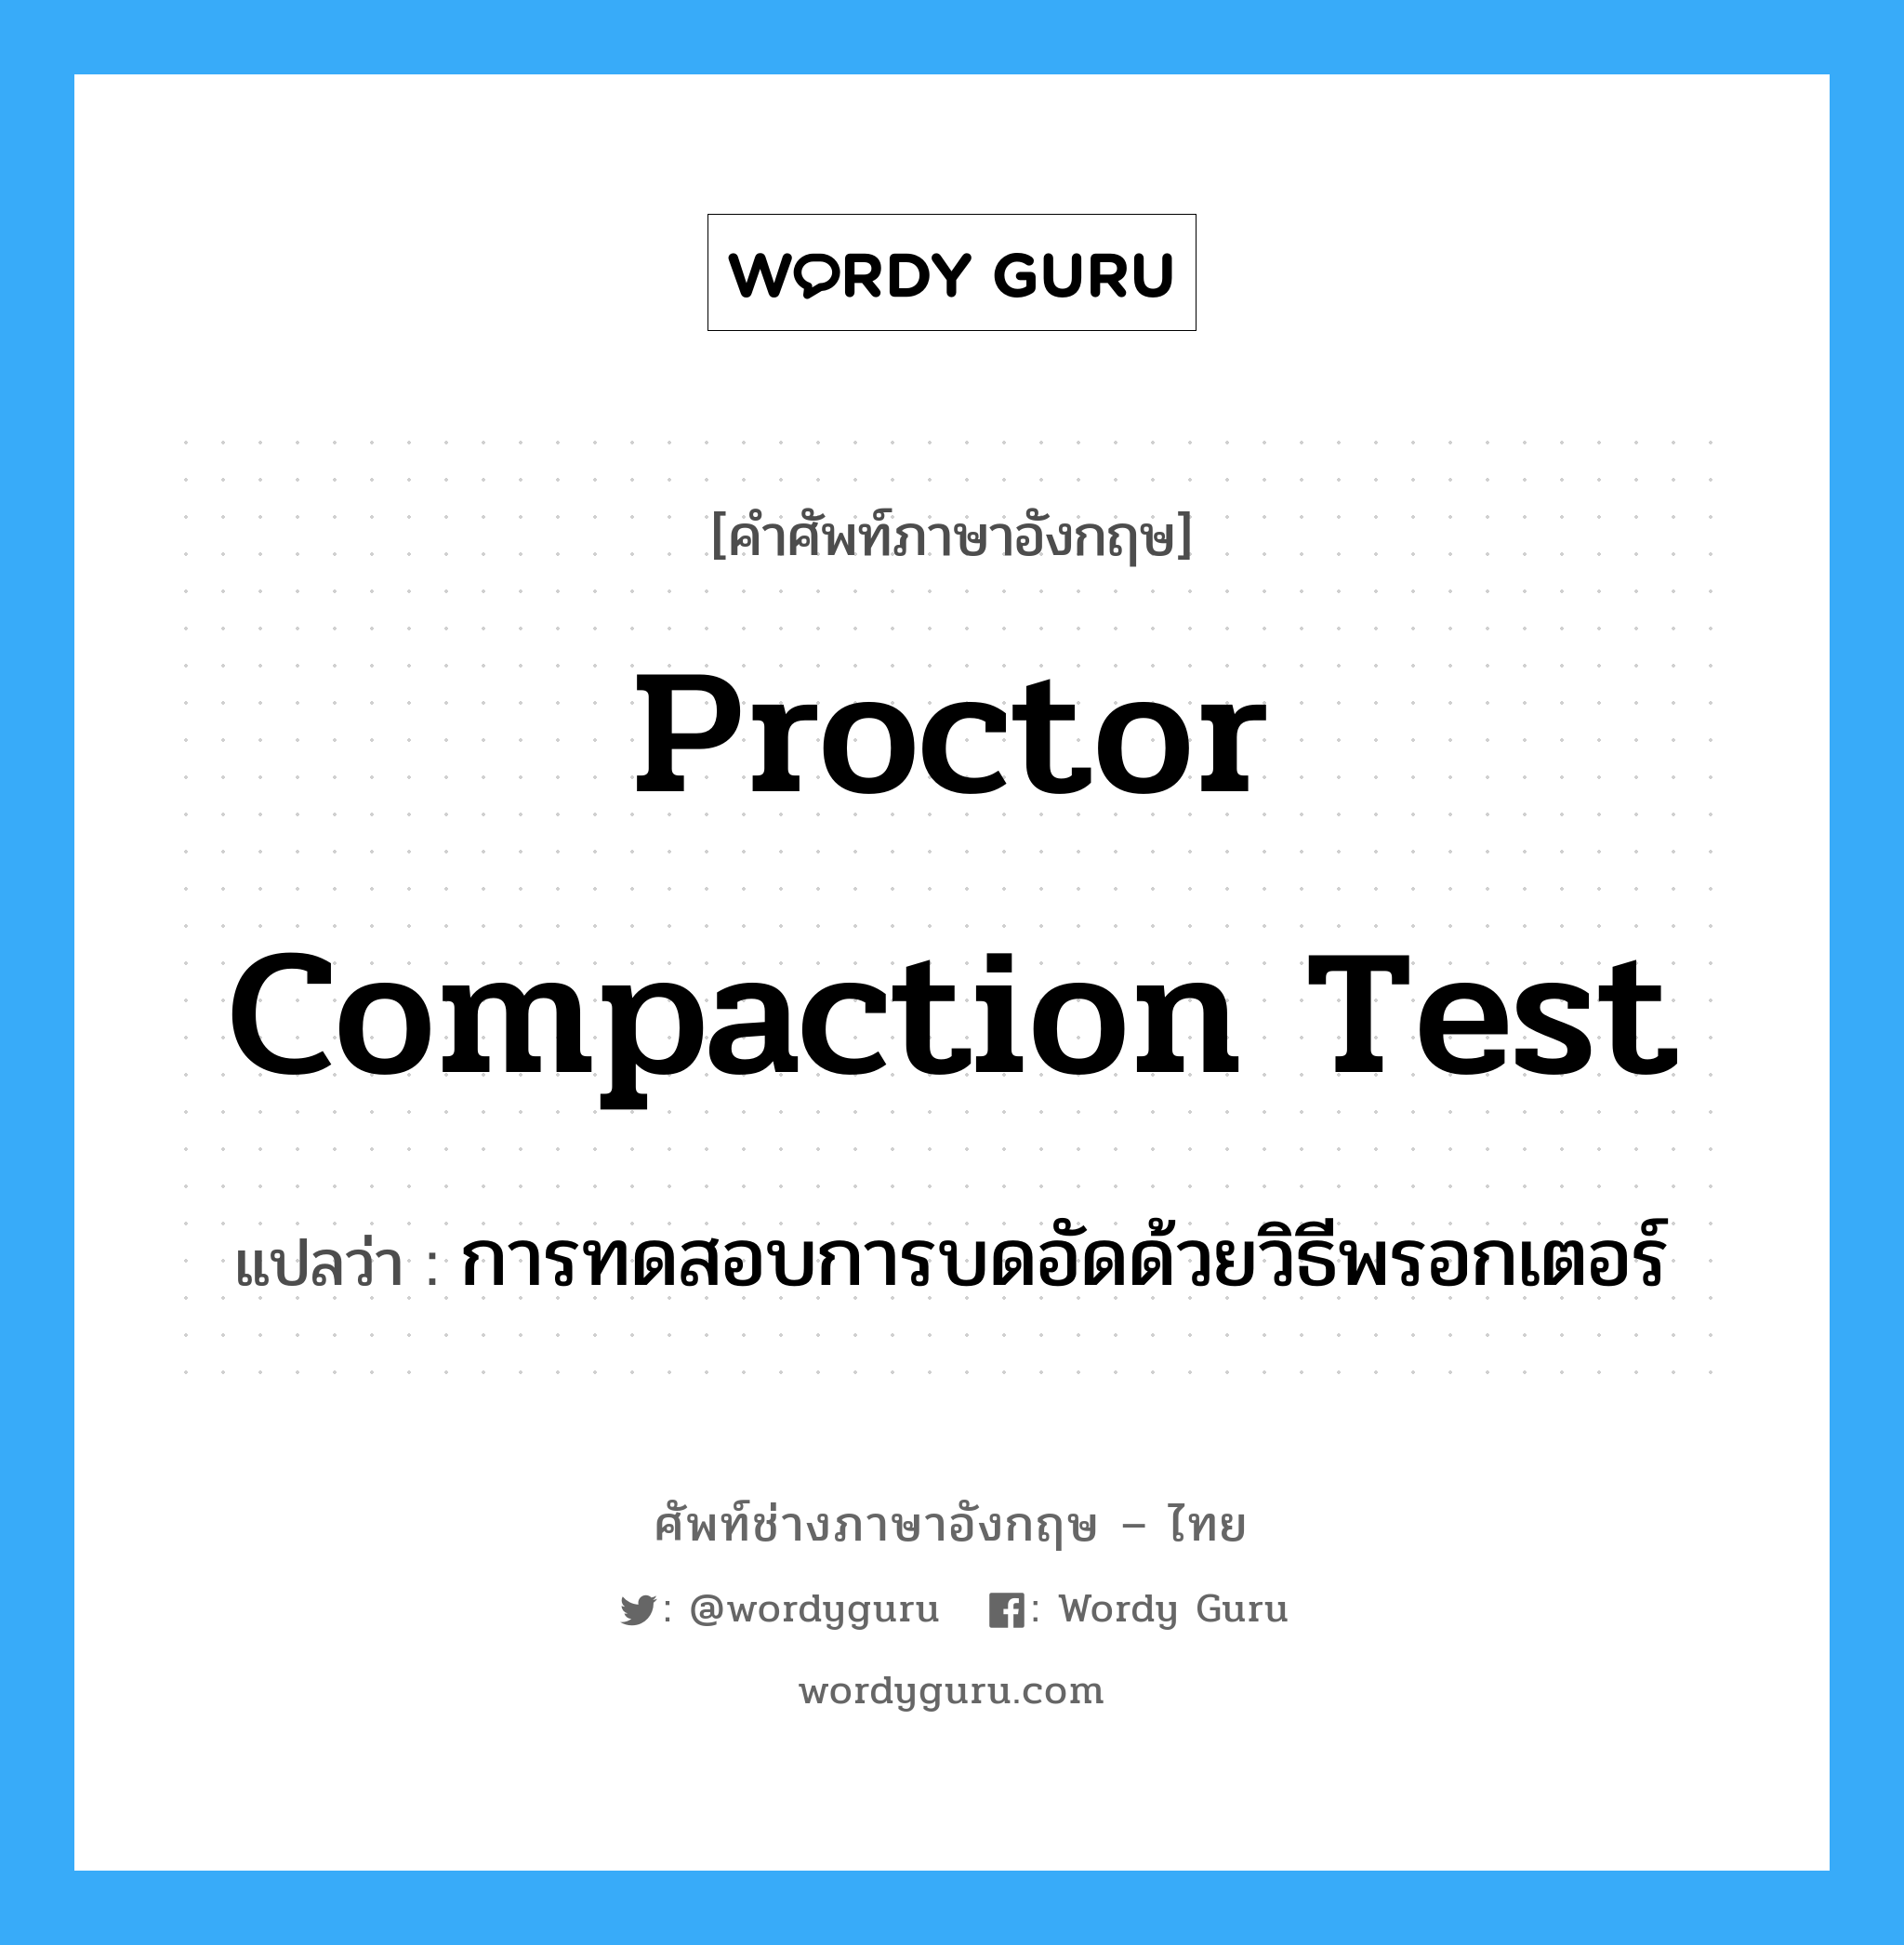 proctor compaction test แปลว่า?, คำศัพท์ช่างภาษาอังกฤษ - ไทย proctor compaction test คำศัพท์ภาษาอังกฤษ proctor compaction test แปลว่า การทดสอบการบดอัดด้วยวิธีพรอกเตอร์